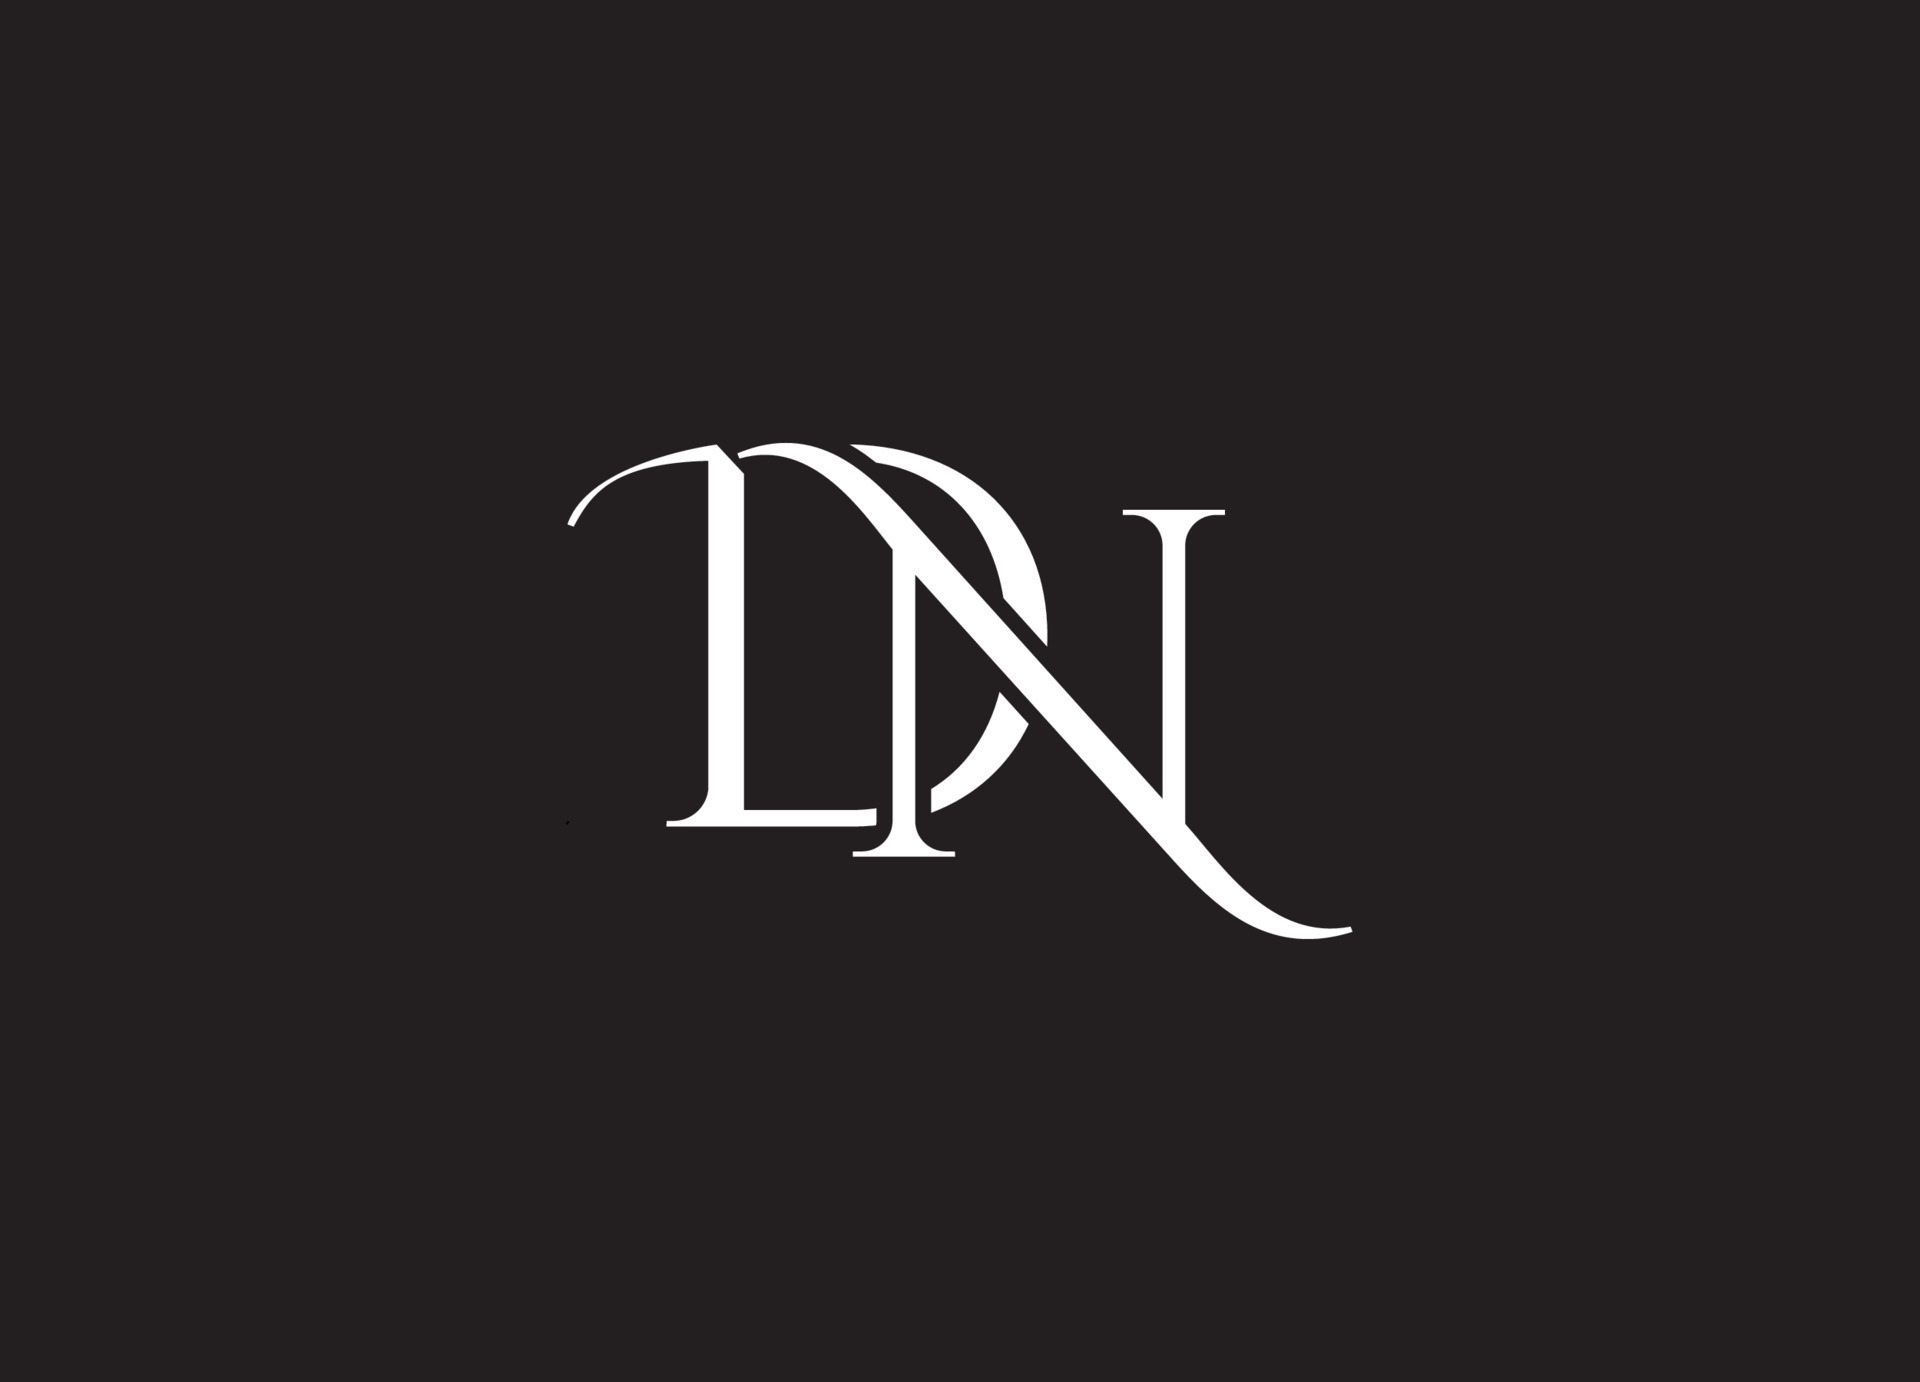 DN logo design and company logo 15811748 Vector Art at Vecteezy